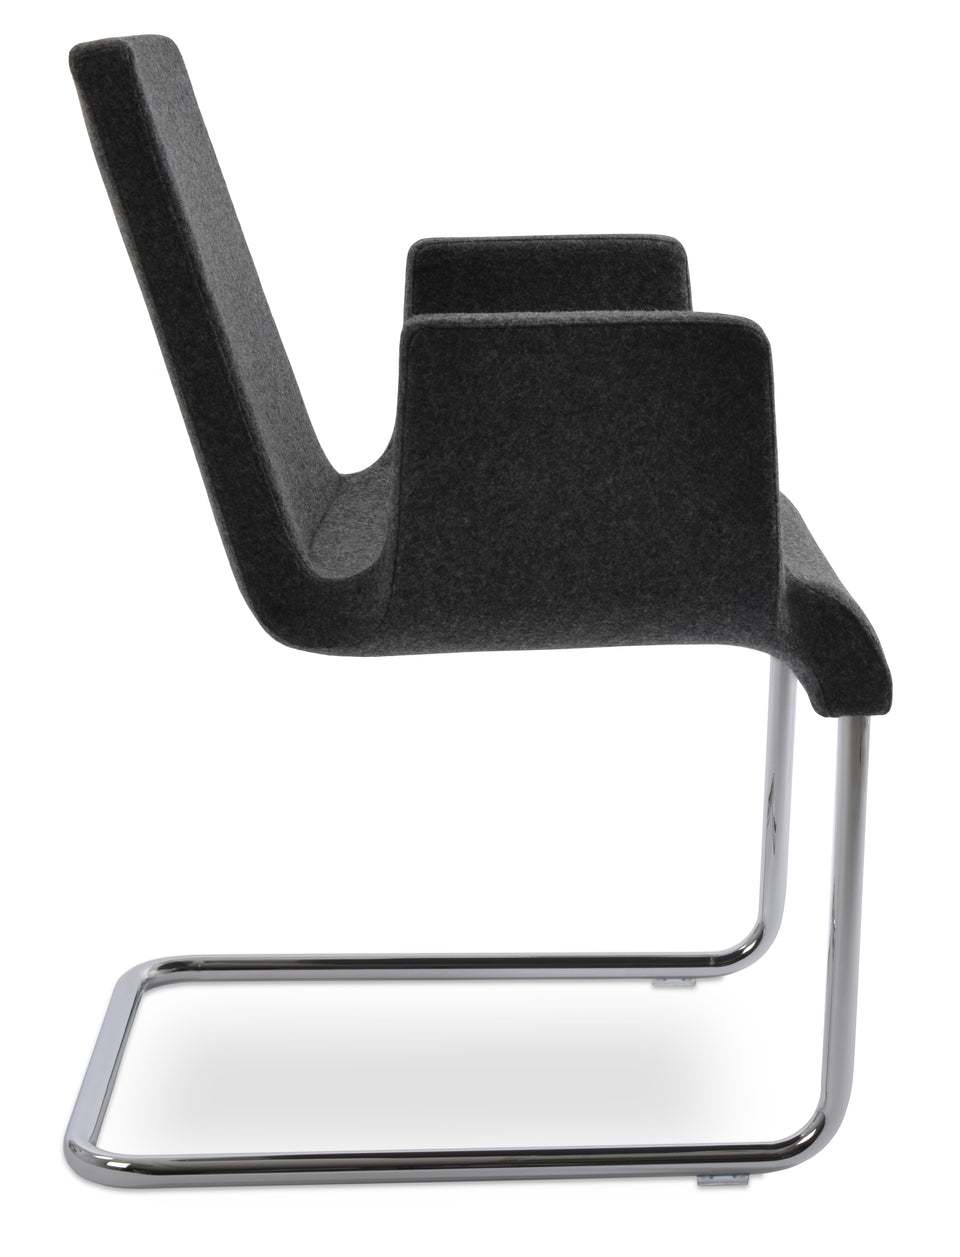 Reiss Arm Chair.